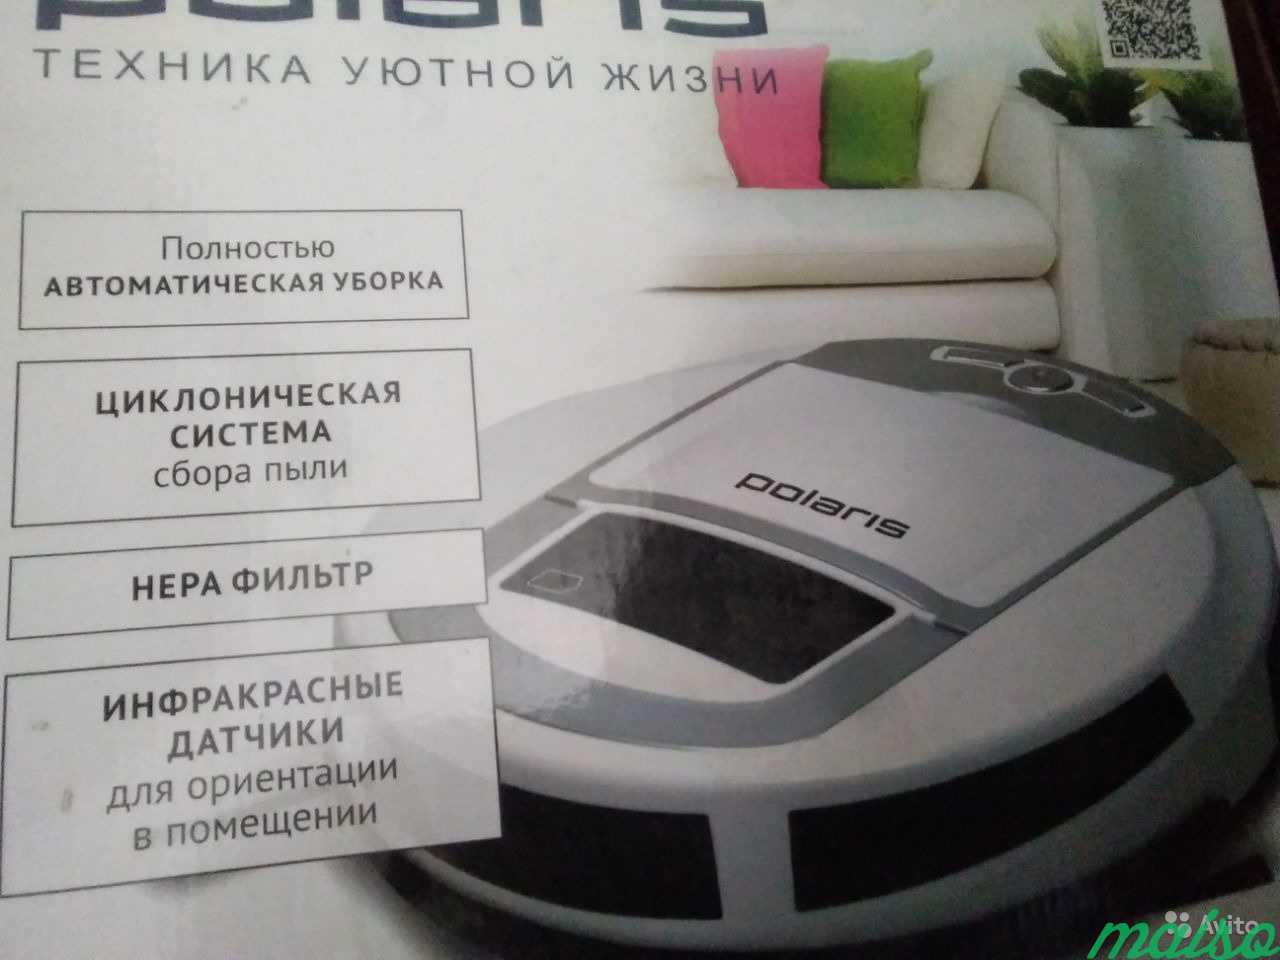 Продажа б у робота пылесоса в Москве. Фото 1